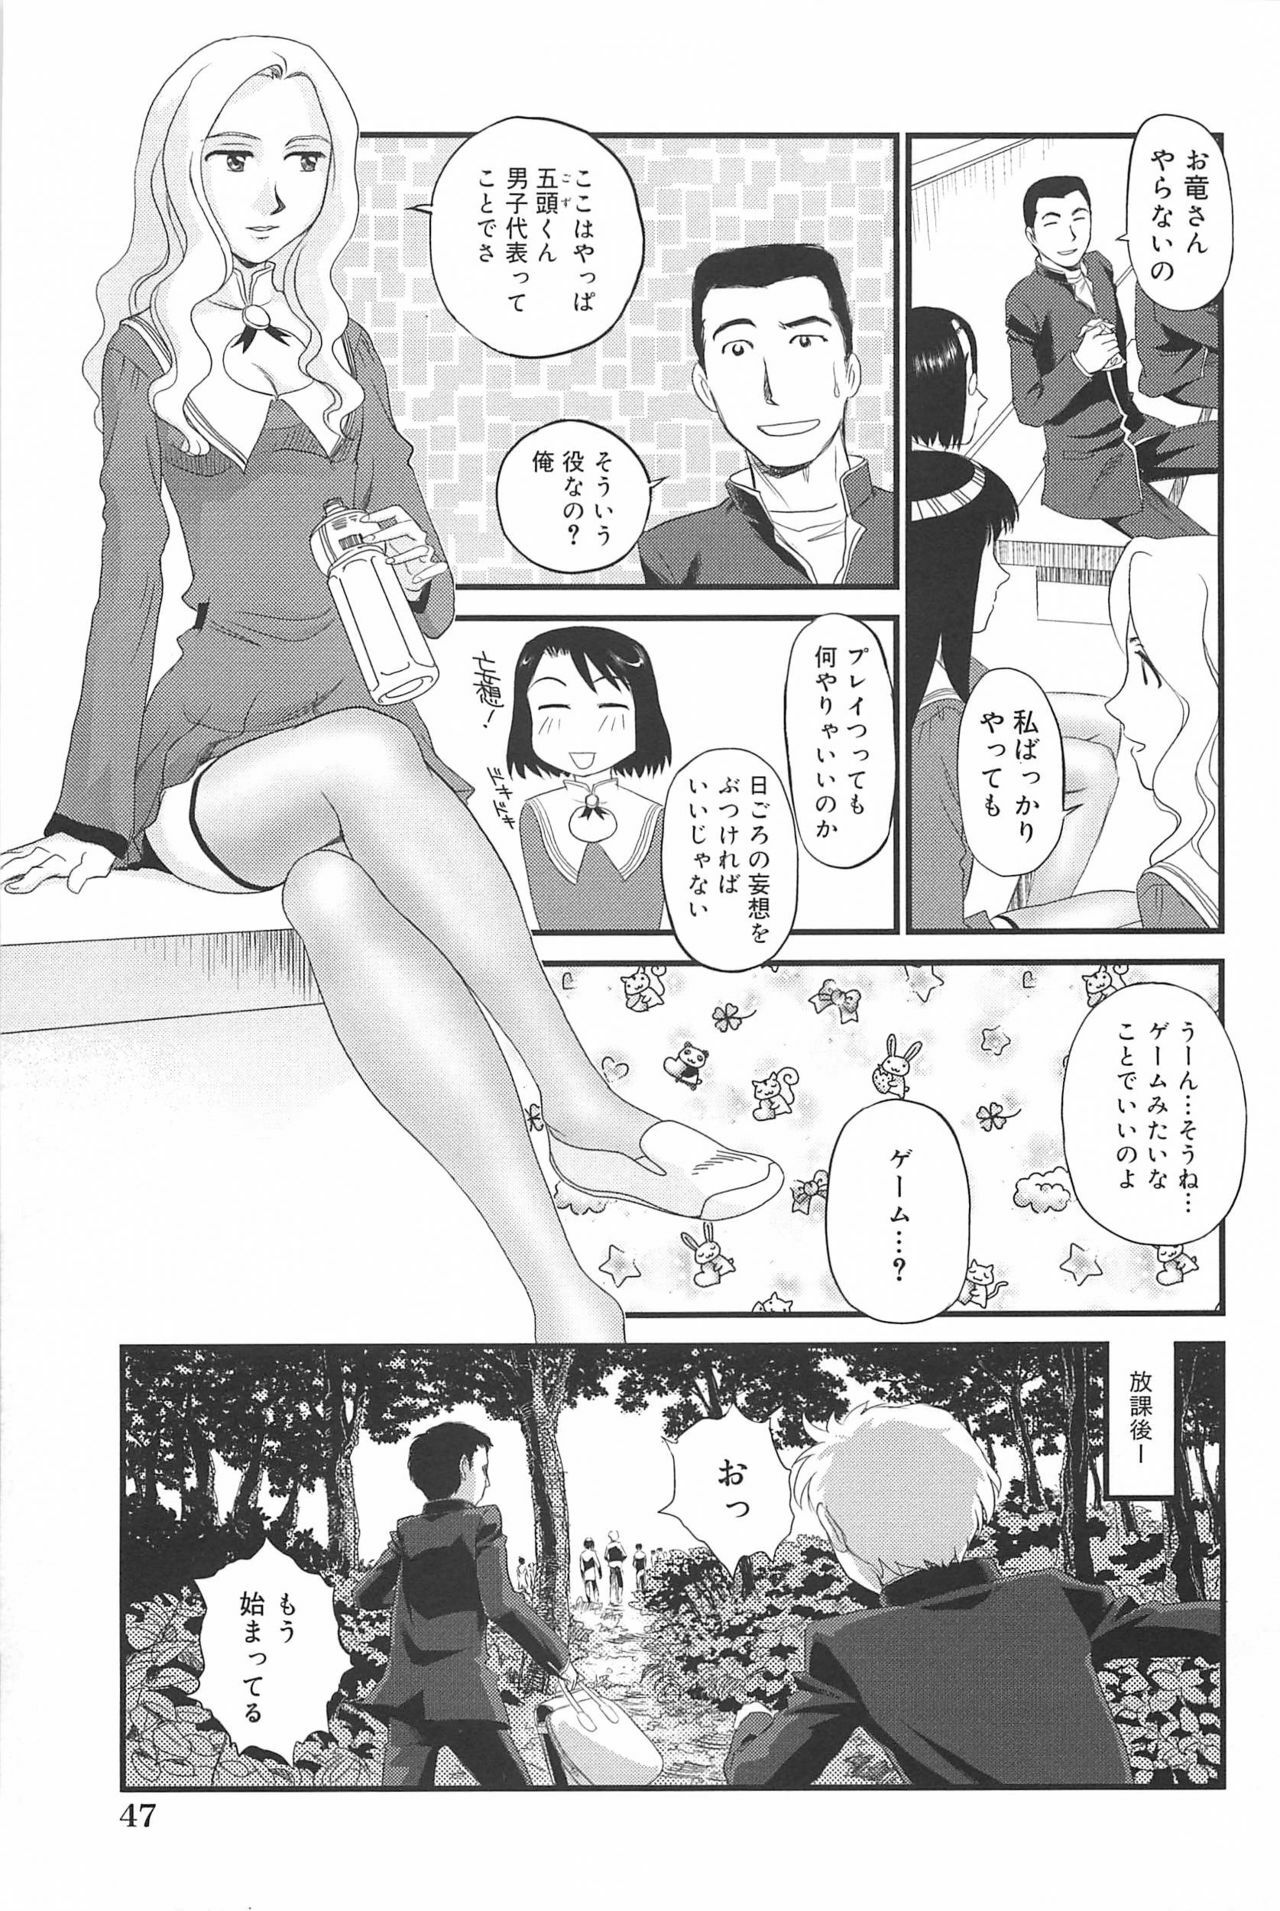 [Suehirogari] Kumo no Michi page 48 full